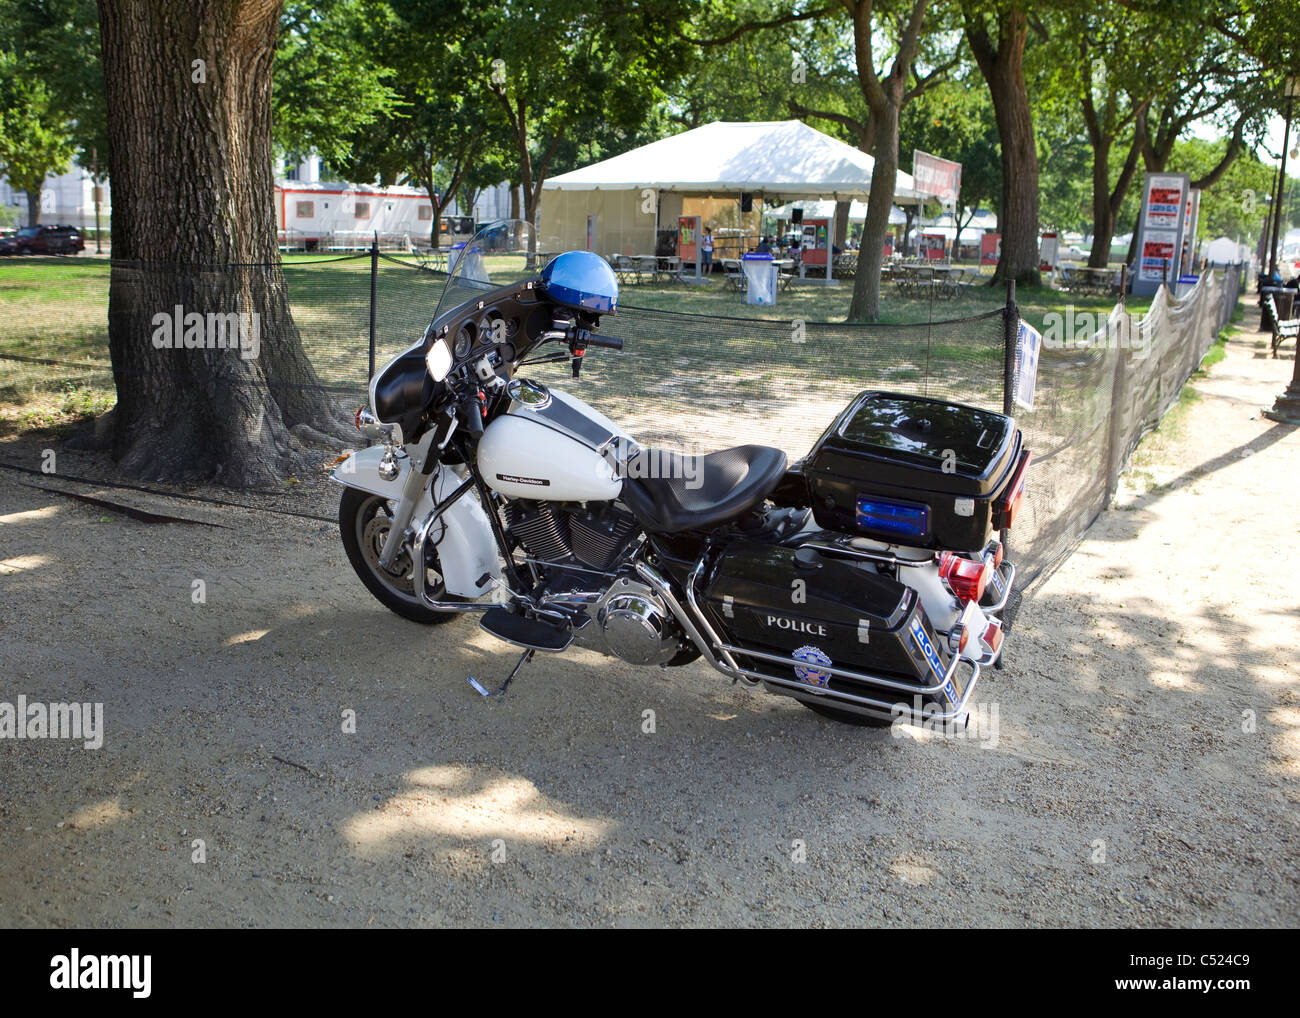 Noi Parco nazionale di polizia Harley Davidson Moto parcheggiata in ombra - Washington DC, Stati Uniti d'America Foto Stock